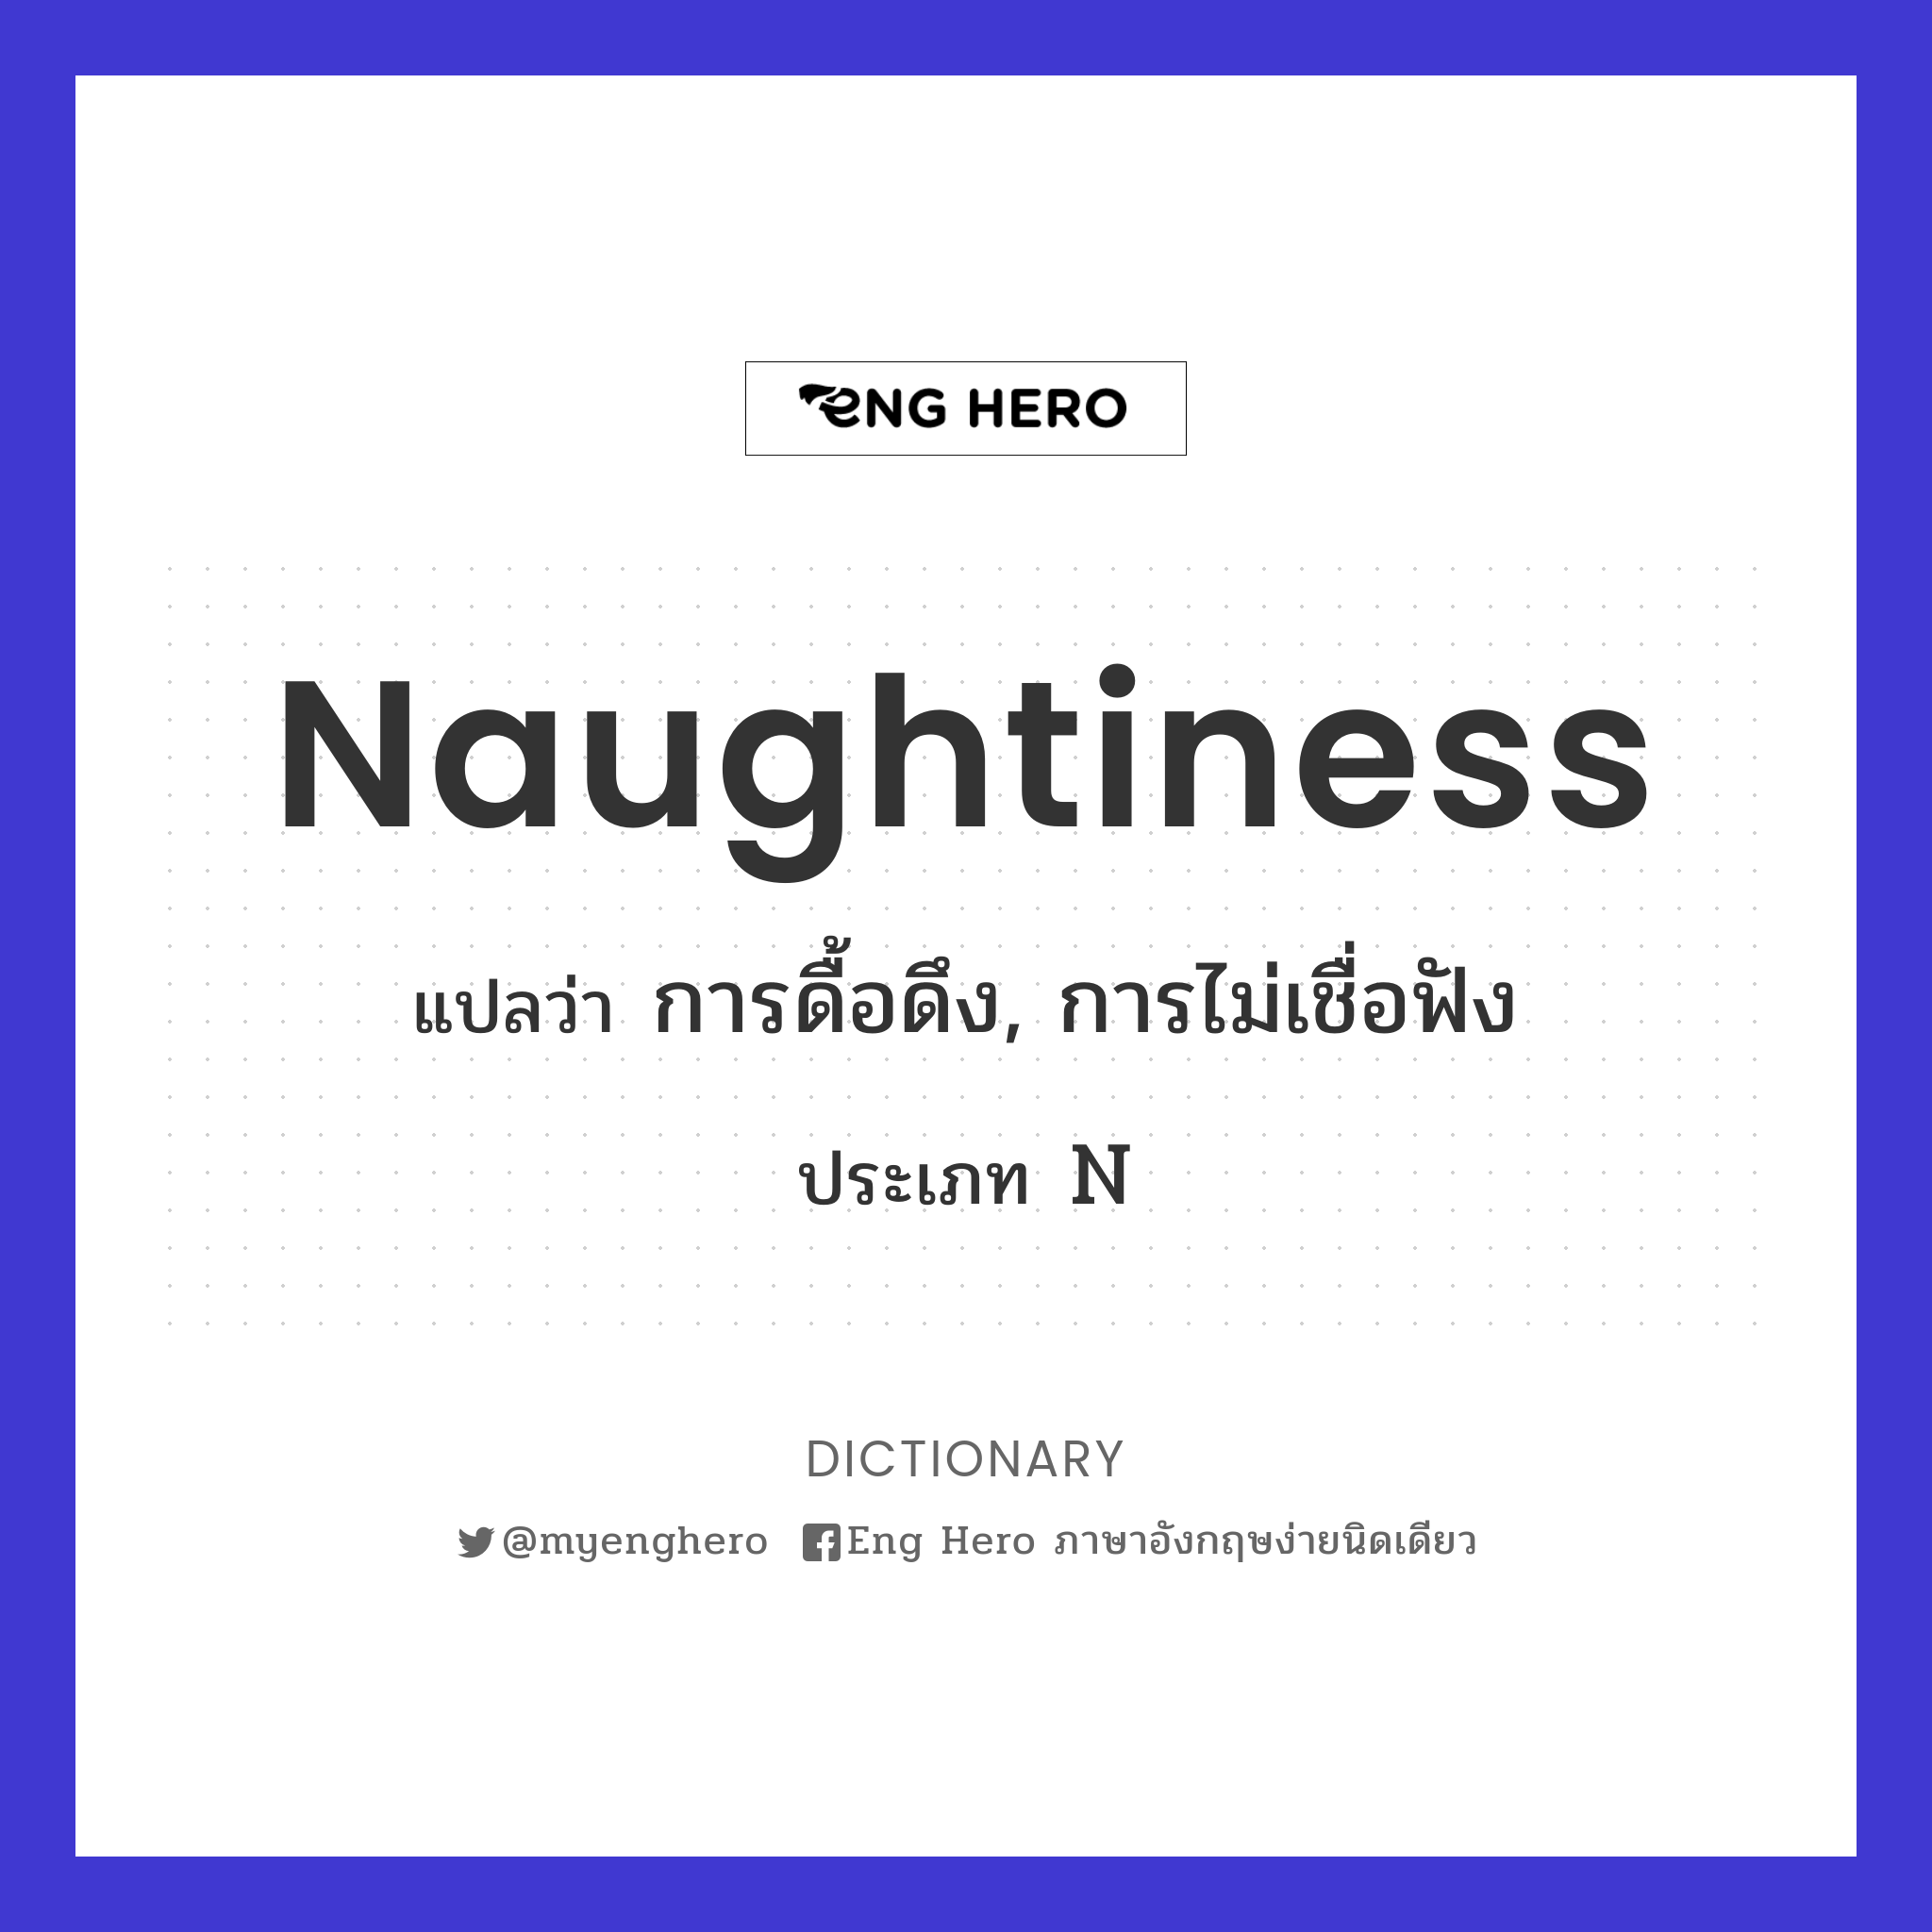 naughtiness